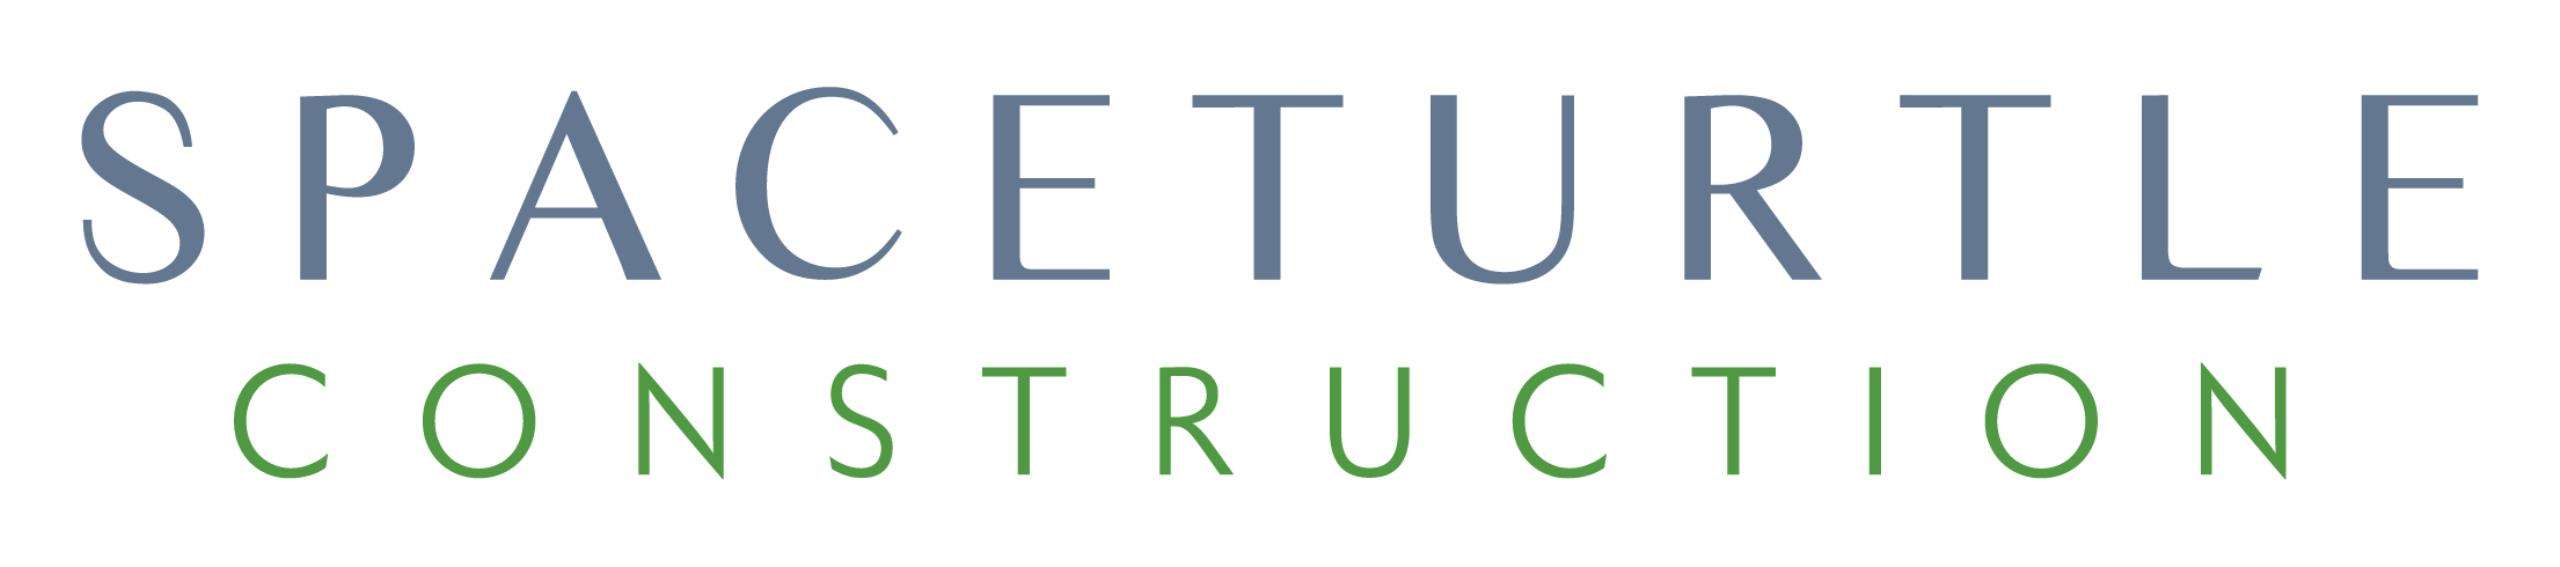 SpaceTurtle Construction LLC Logo